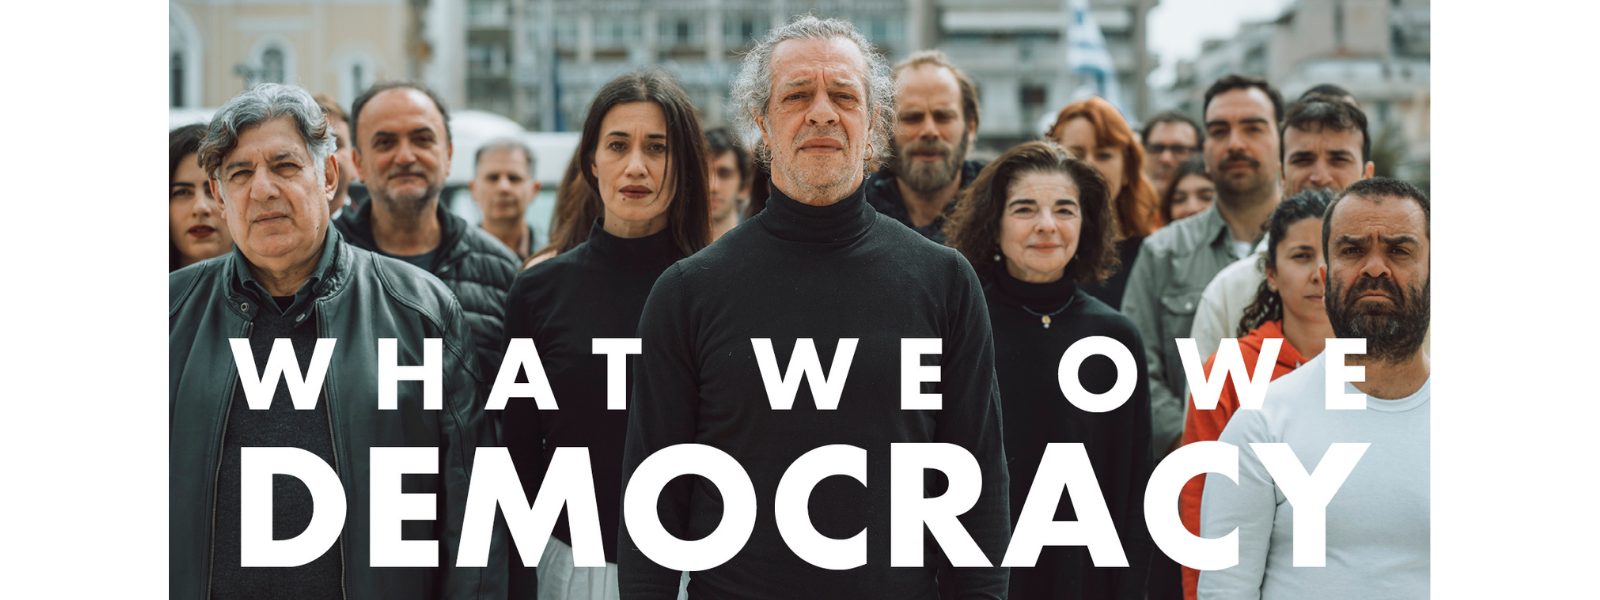 Δημοτικό Θέατρο Πειραιά - Νίκος Διαμαντής - What We Owe Democracy / Τι οφείλουμε στη Δημοκρατία